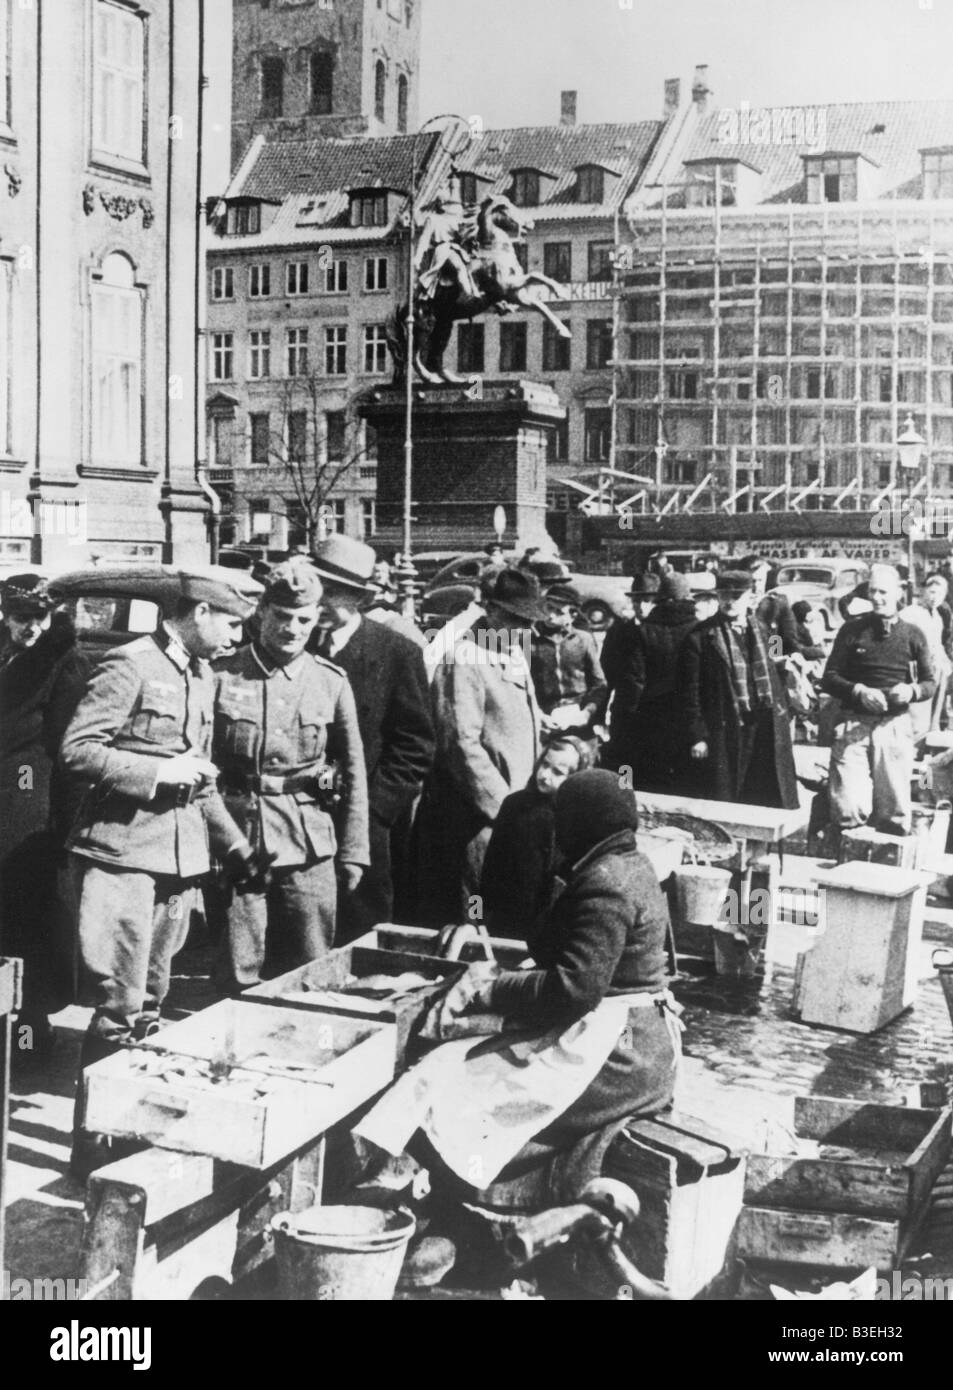 Ger soldiers at market / Copenhagen 1940 Stock Photo